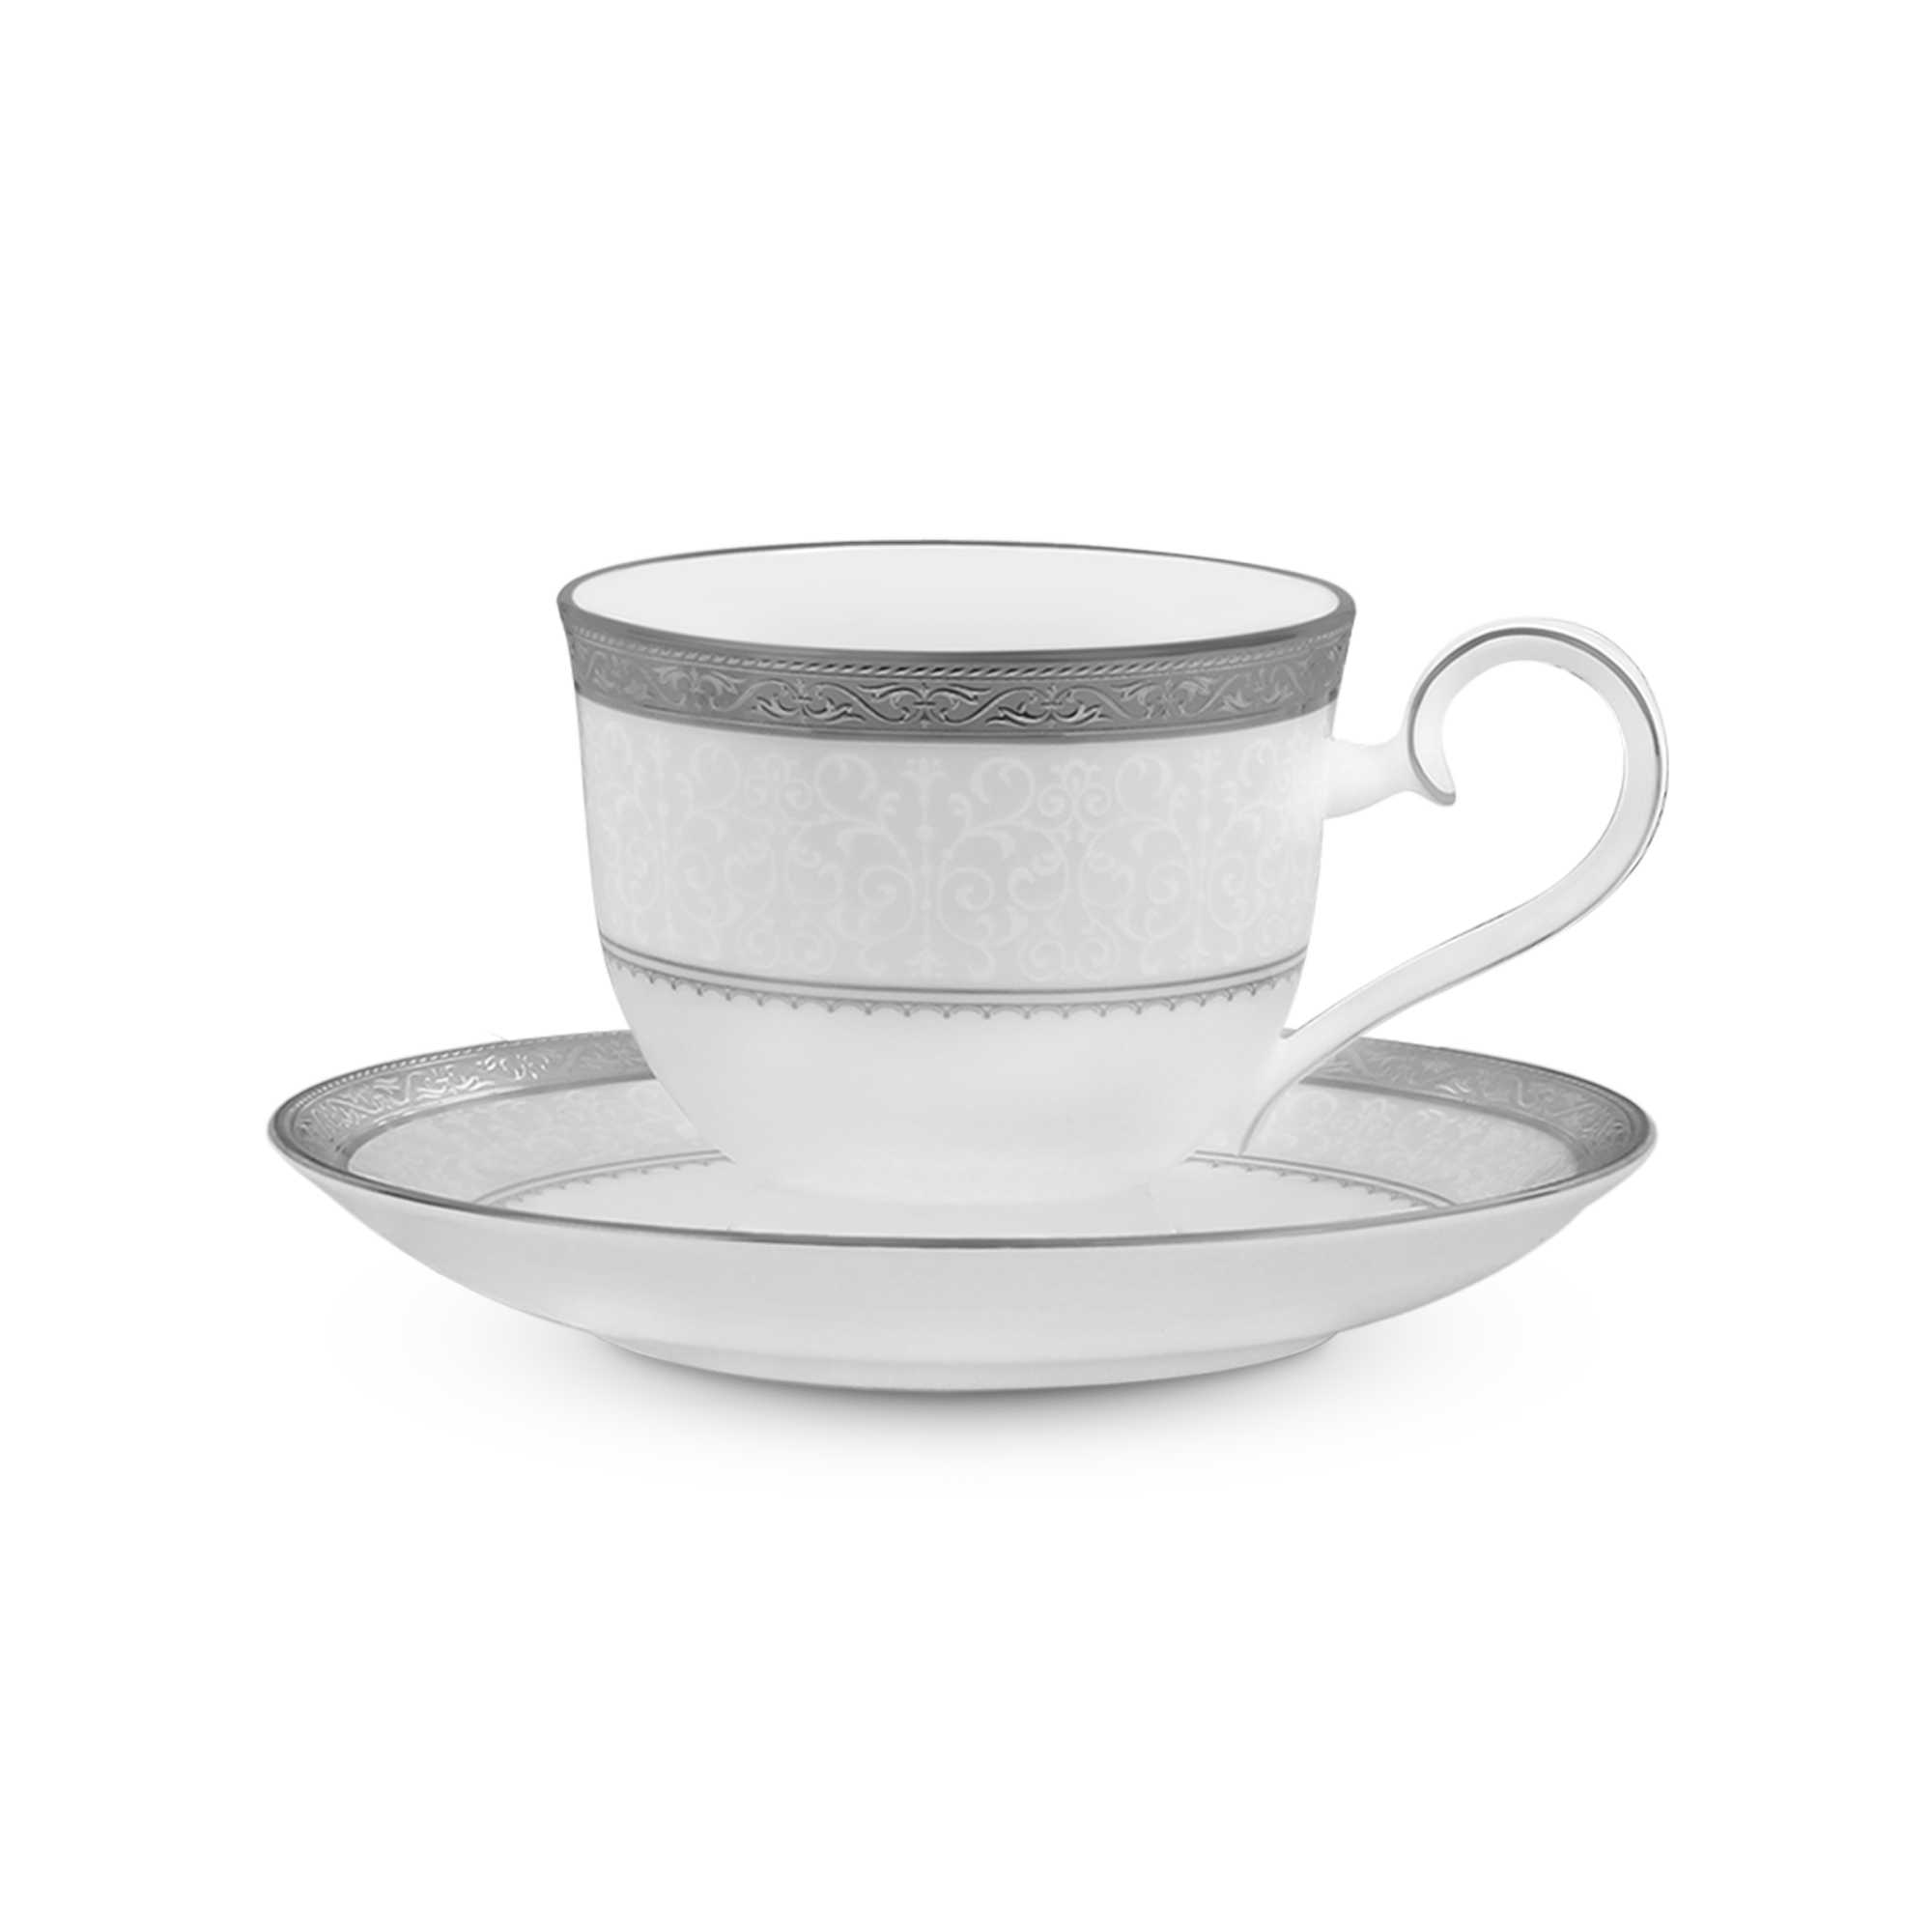  Chén trà (tách trà) kèm đĩa lót dung tích 230ml sứ xương | Odessa Platinum 4875L-T97217 